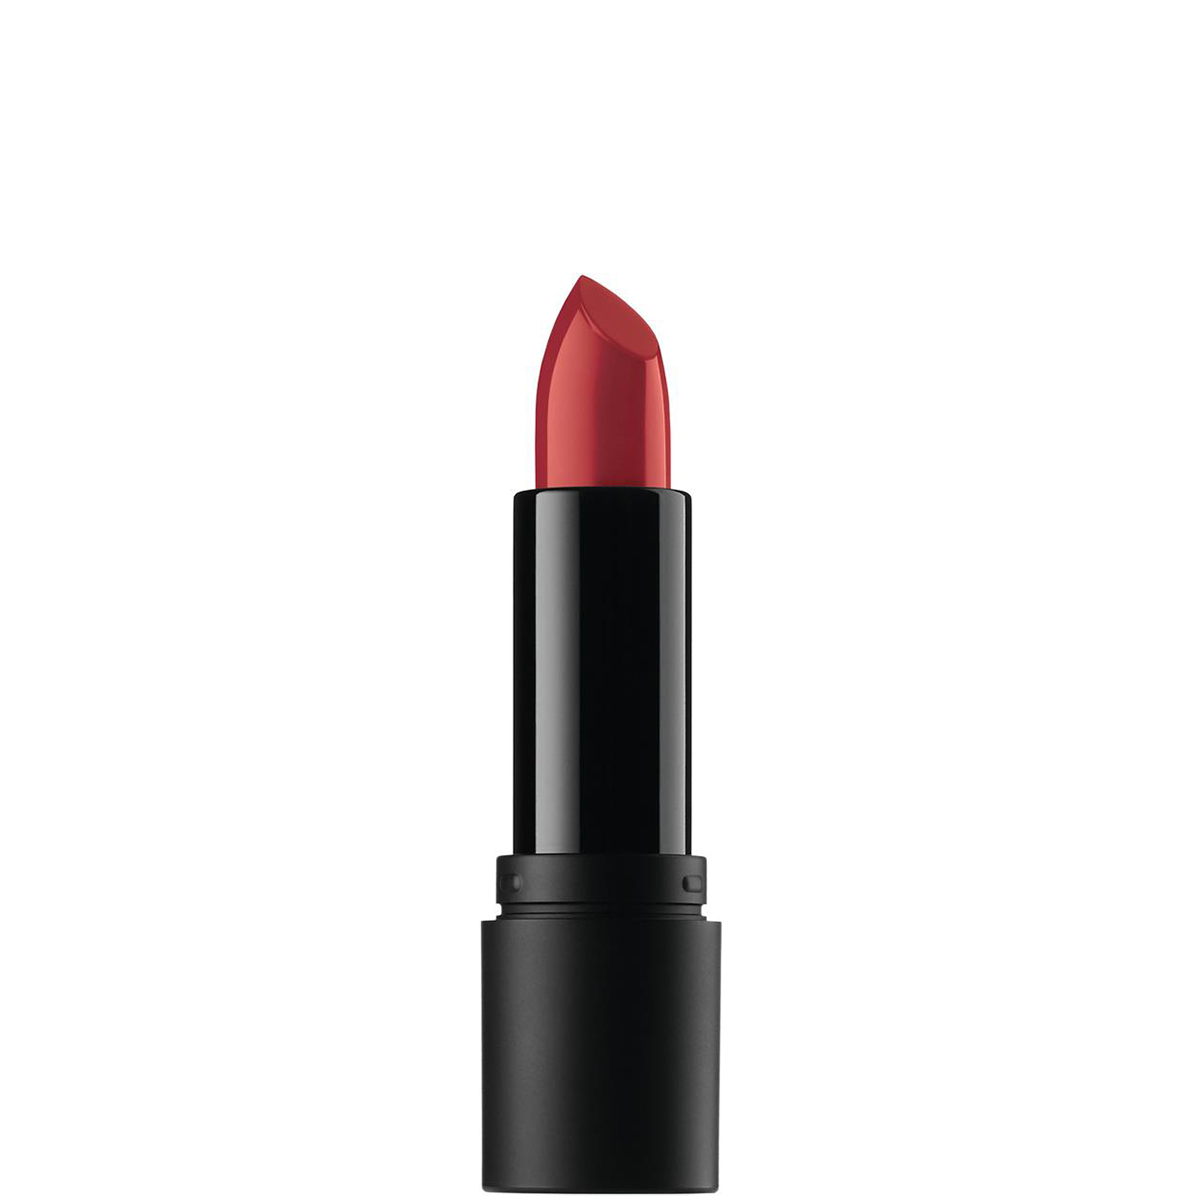 bareMinerals Statement Luxe-shine Lipstick Hustler